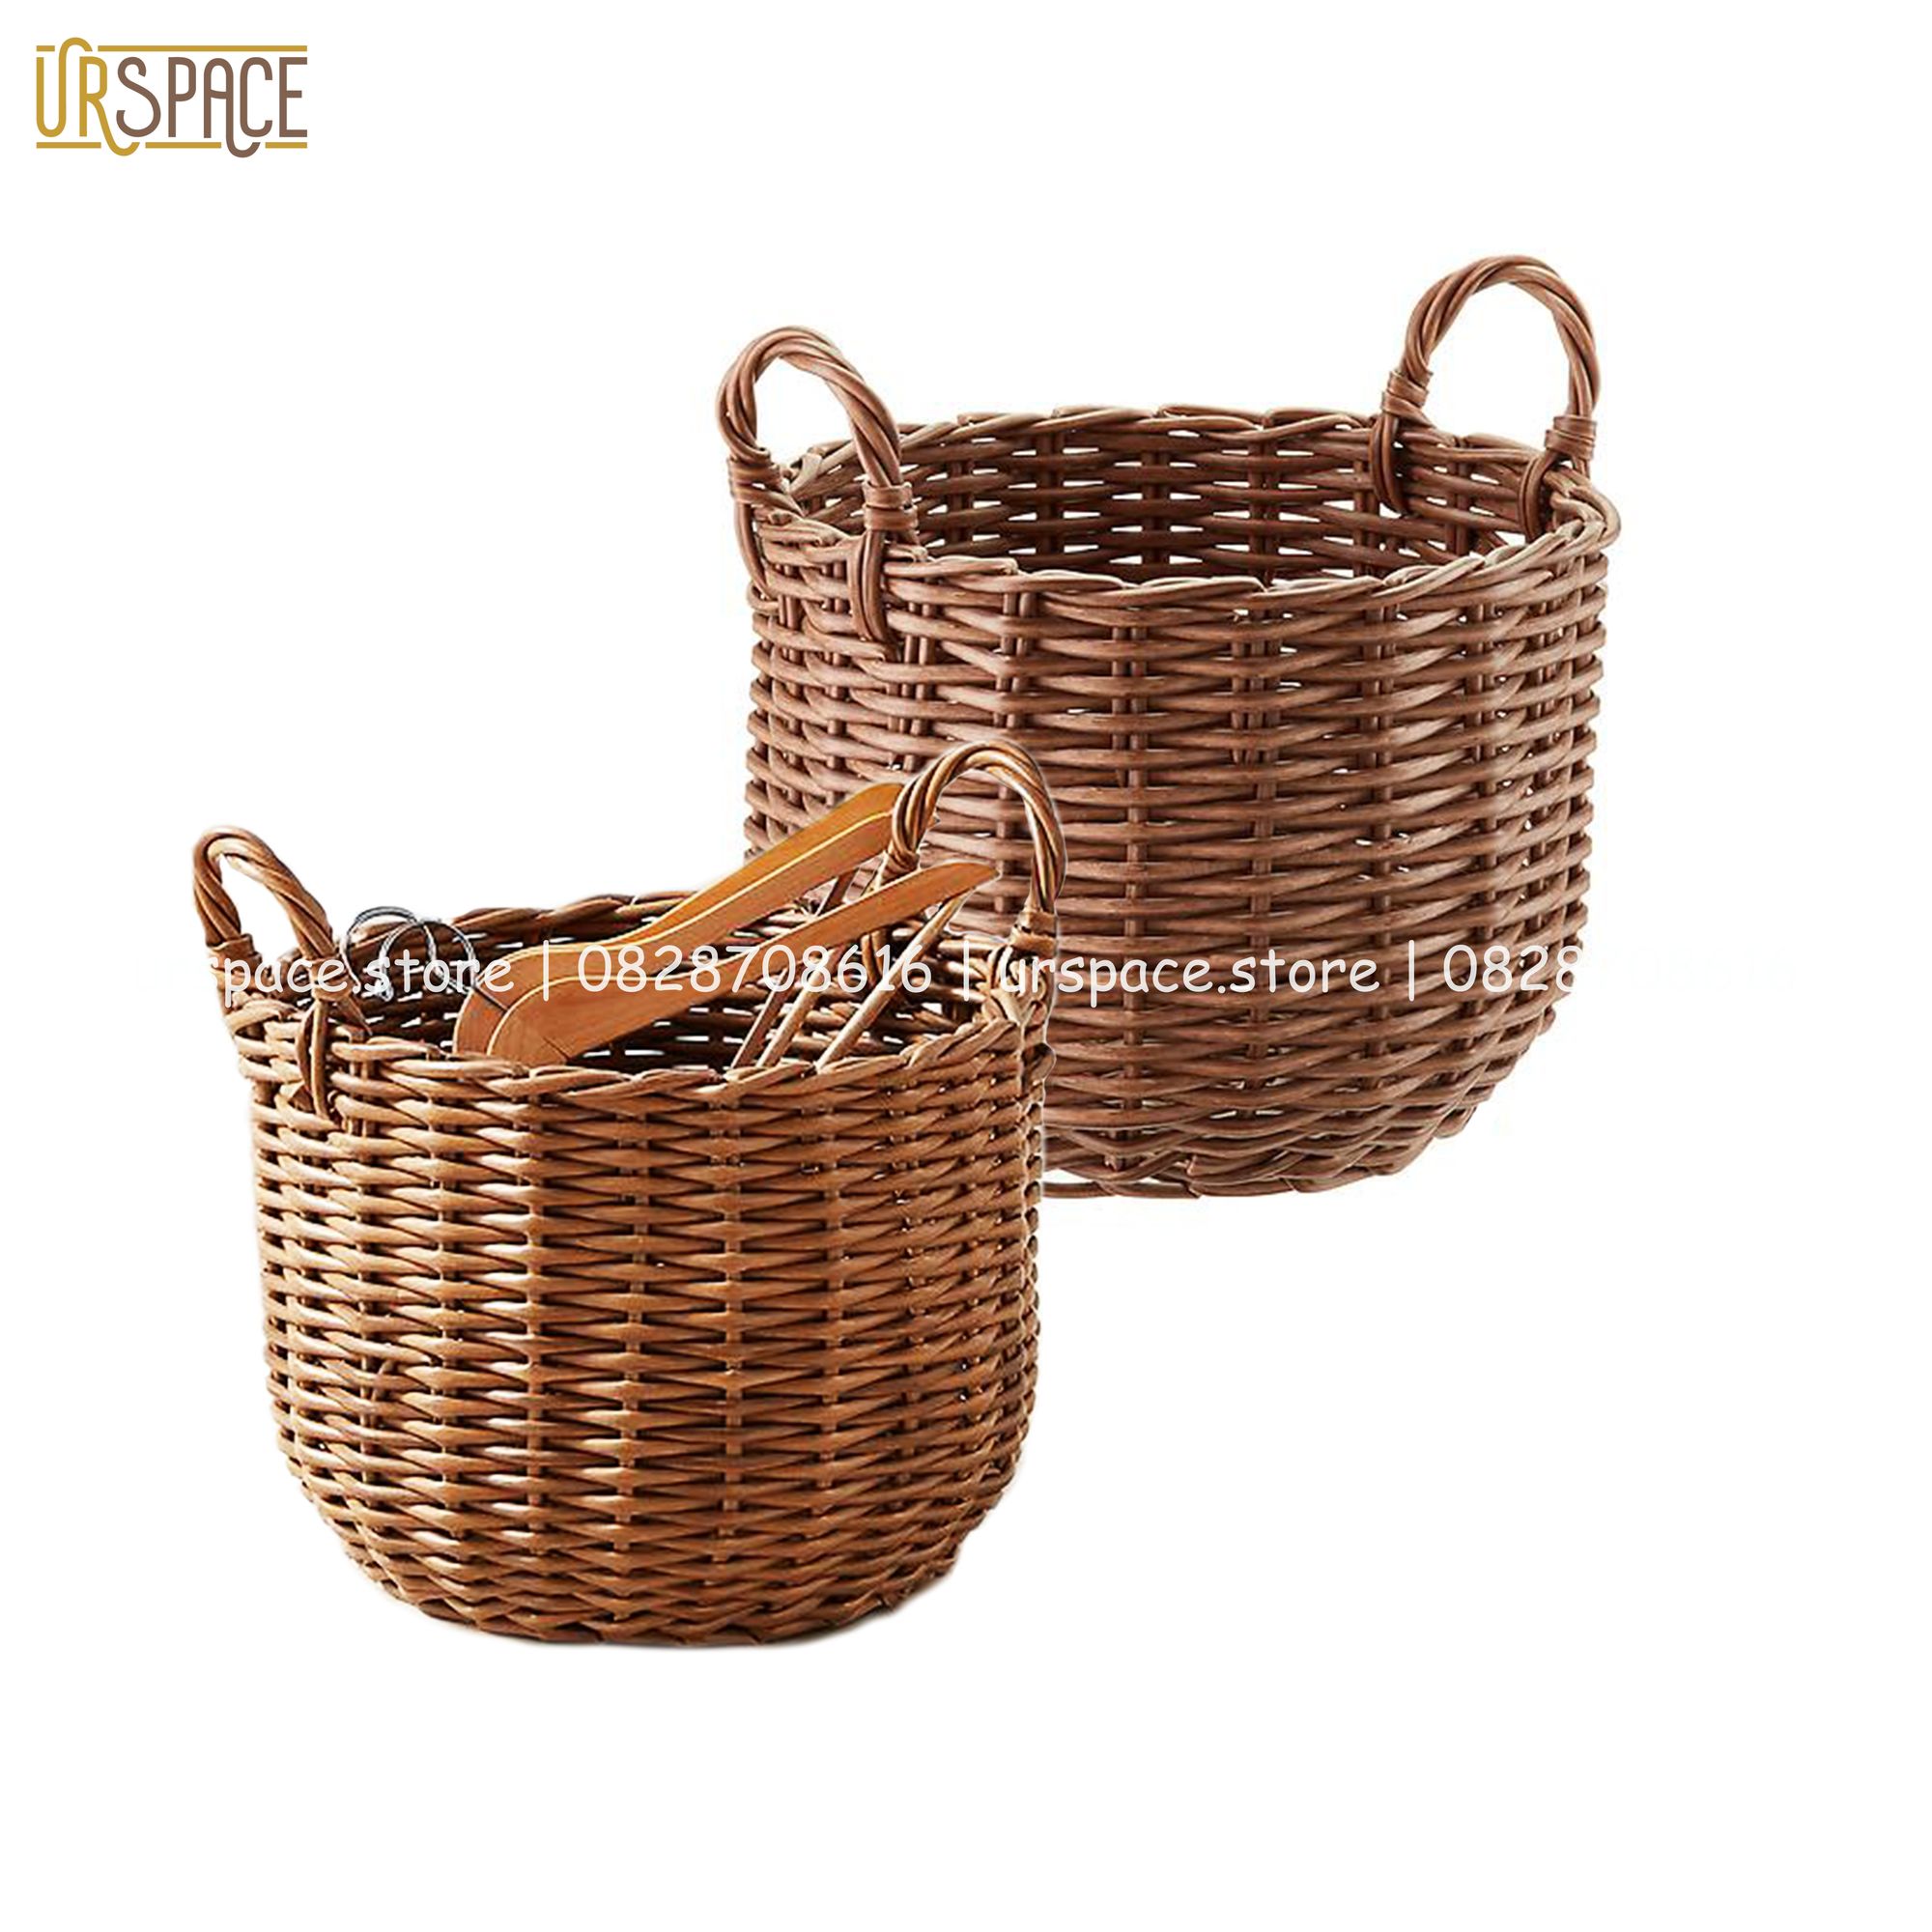 Sọt nhựa đựng quần áo, đồ chơi, trồng cây đa năng hình tròn có quai/ Hand-woven wicker round storage basket with handle